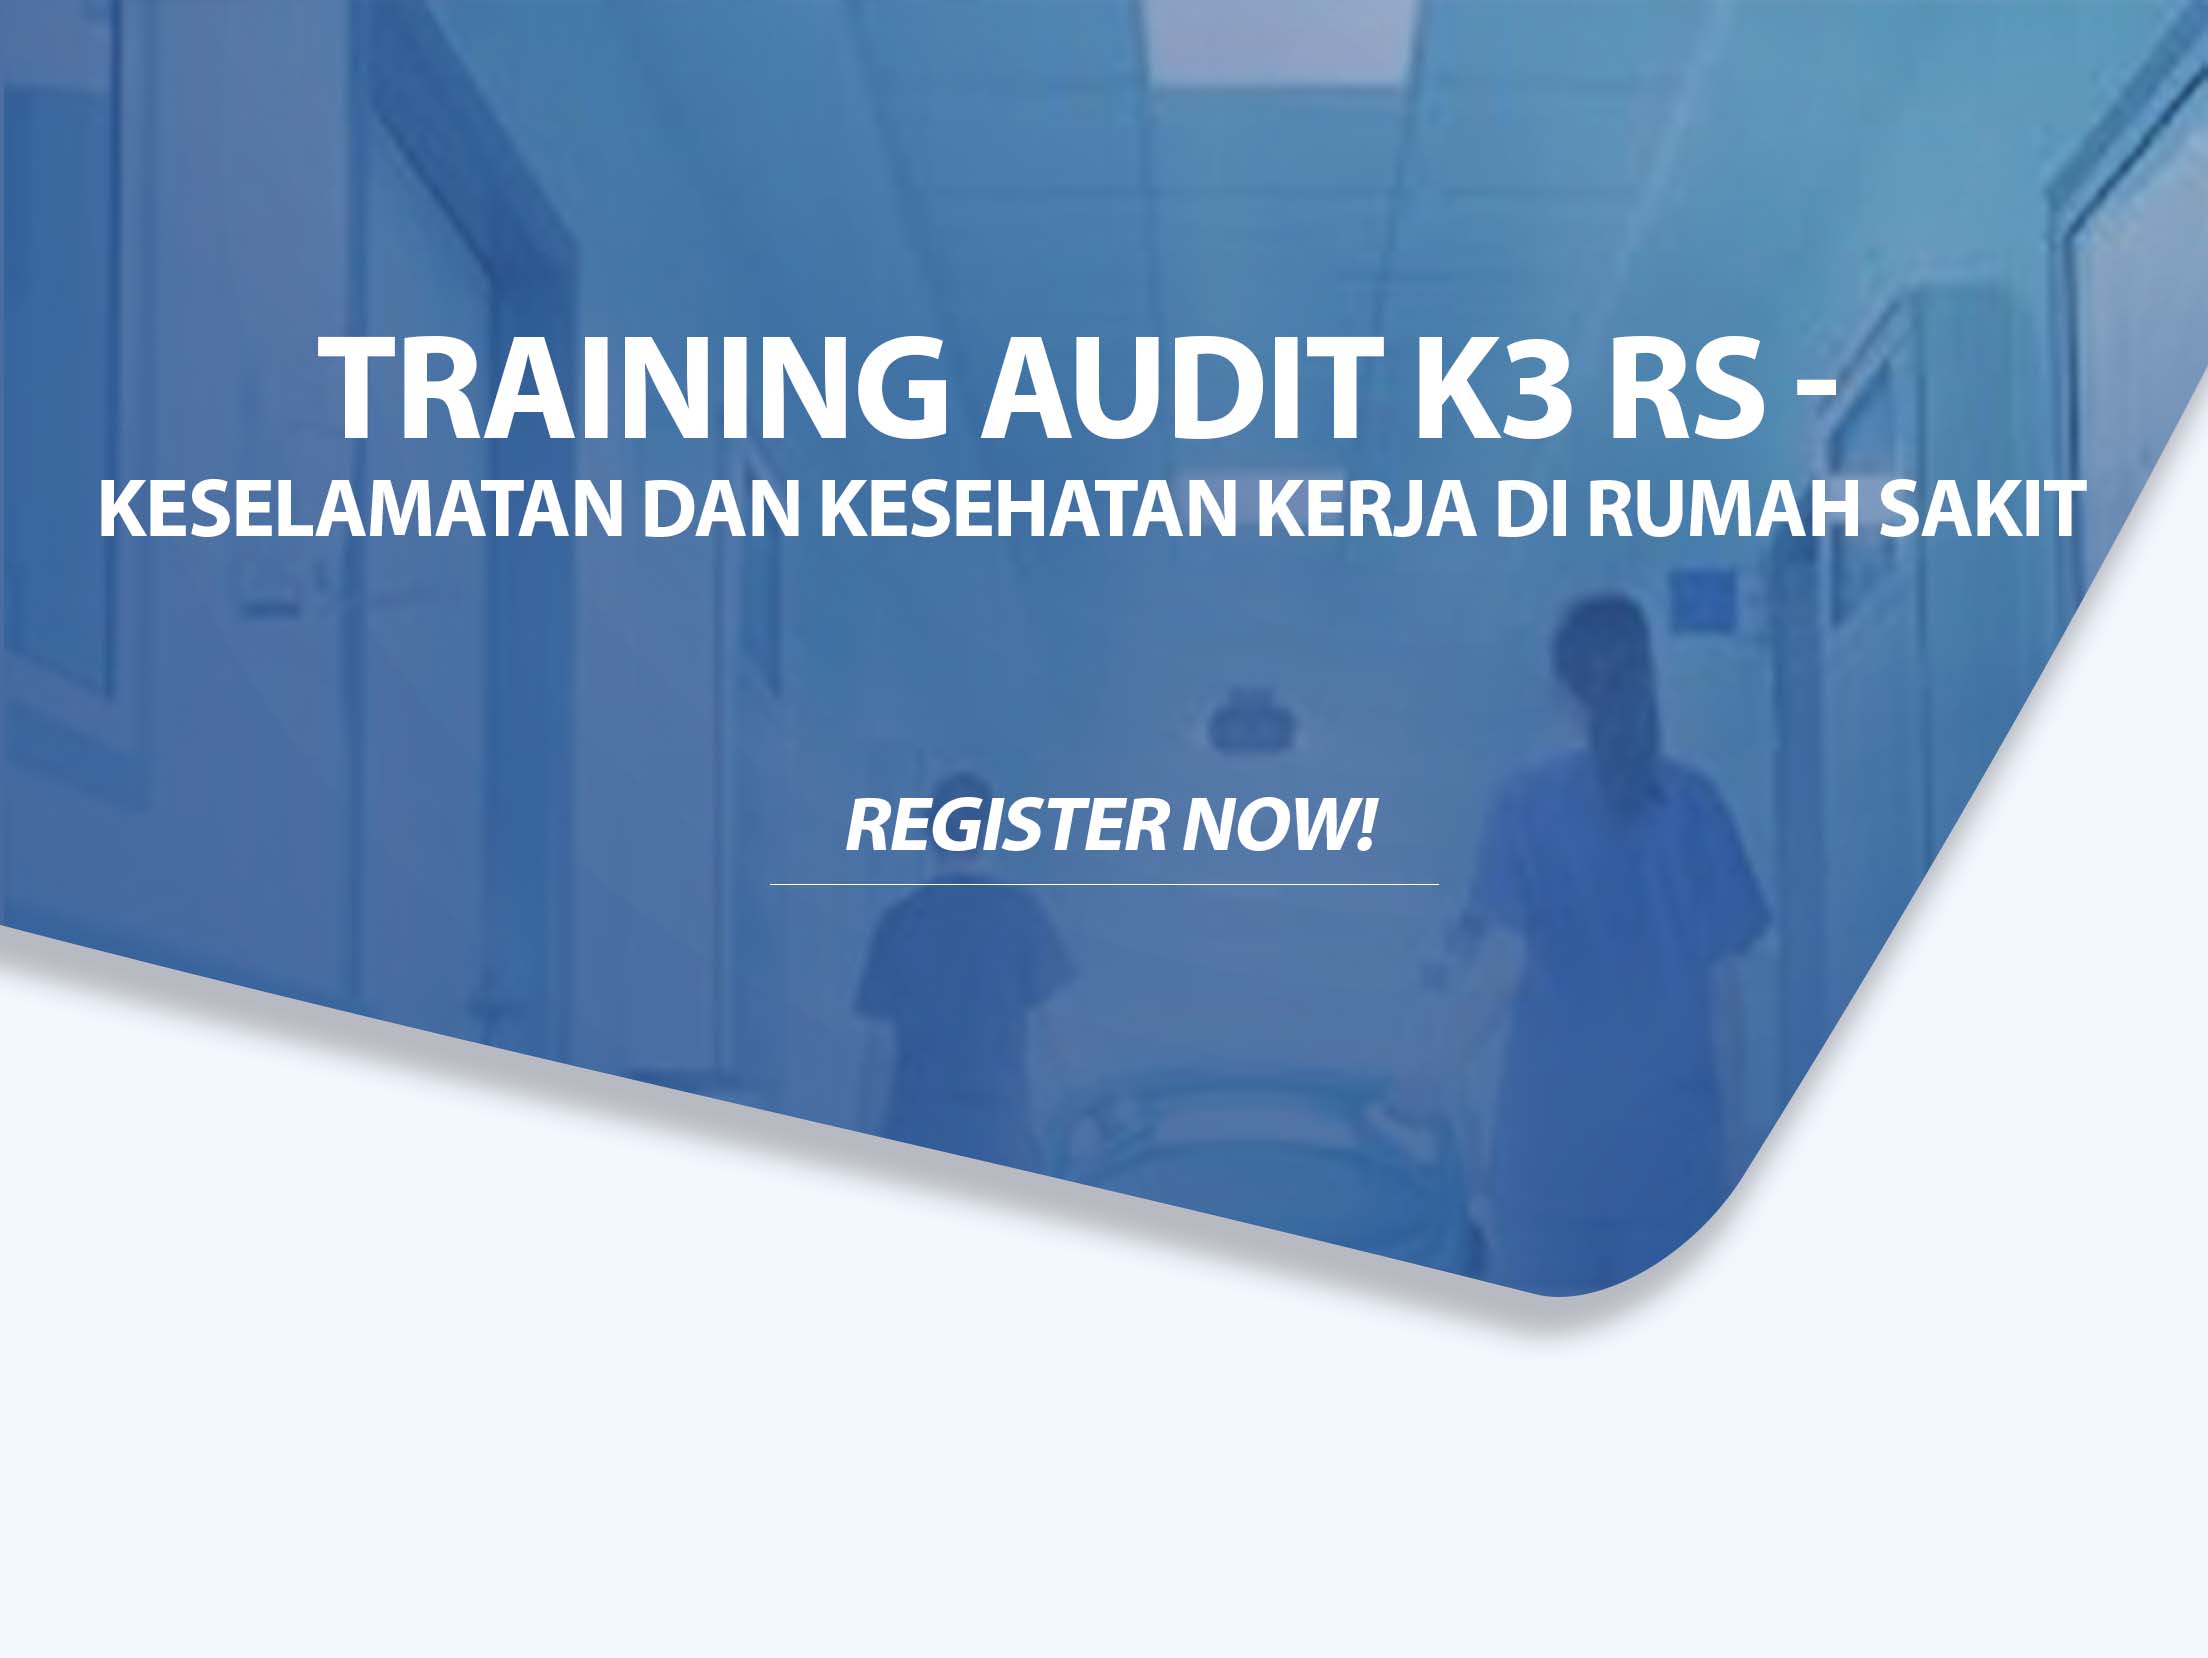 Training Audit K3 RS - Keselamatan dan Kesehatan Kerja di Rumah Sakit